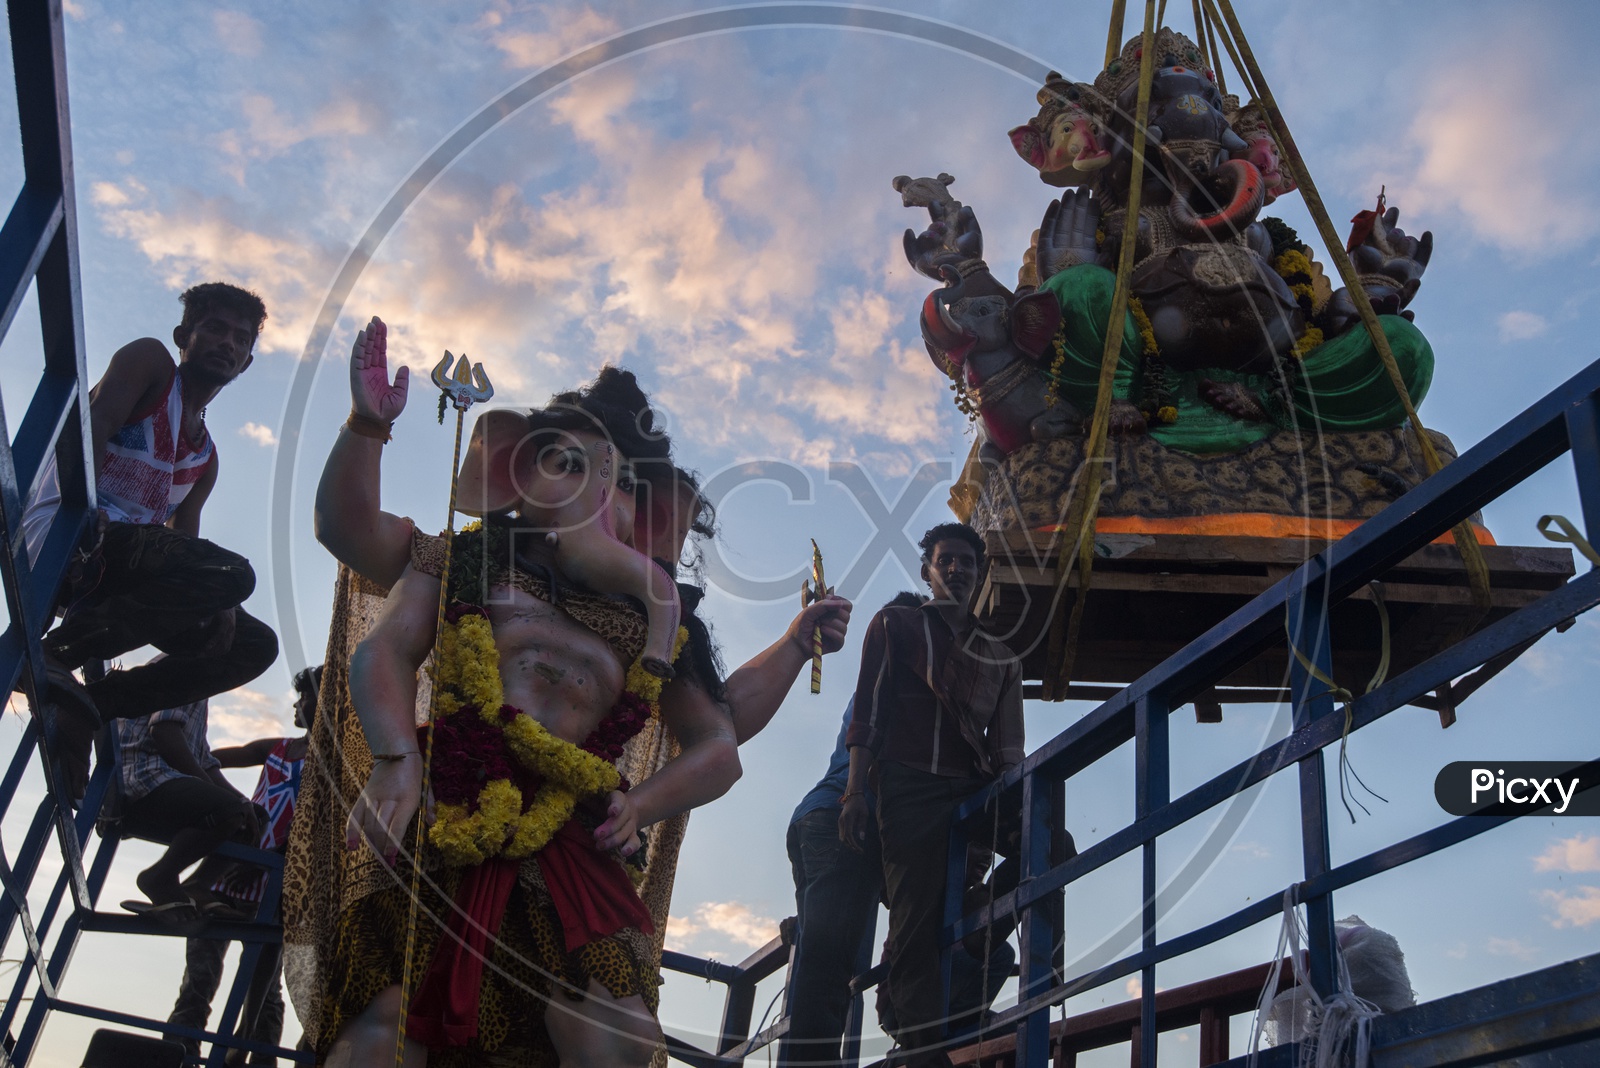 Ganesh idols At Ganesh Visarjan In india